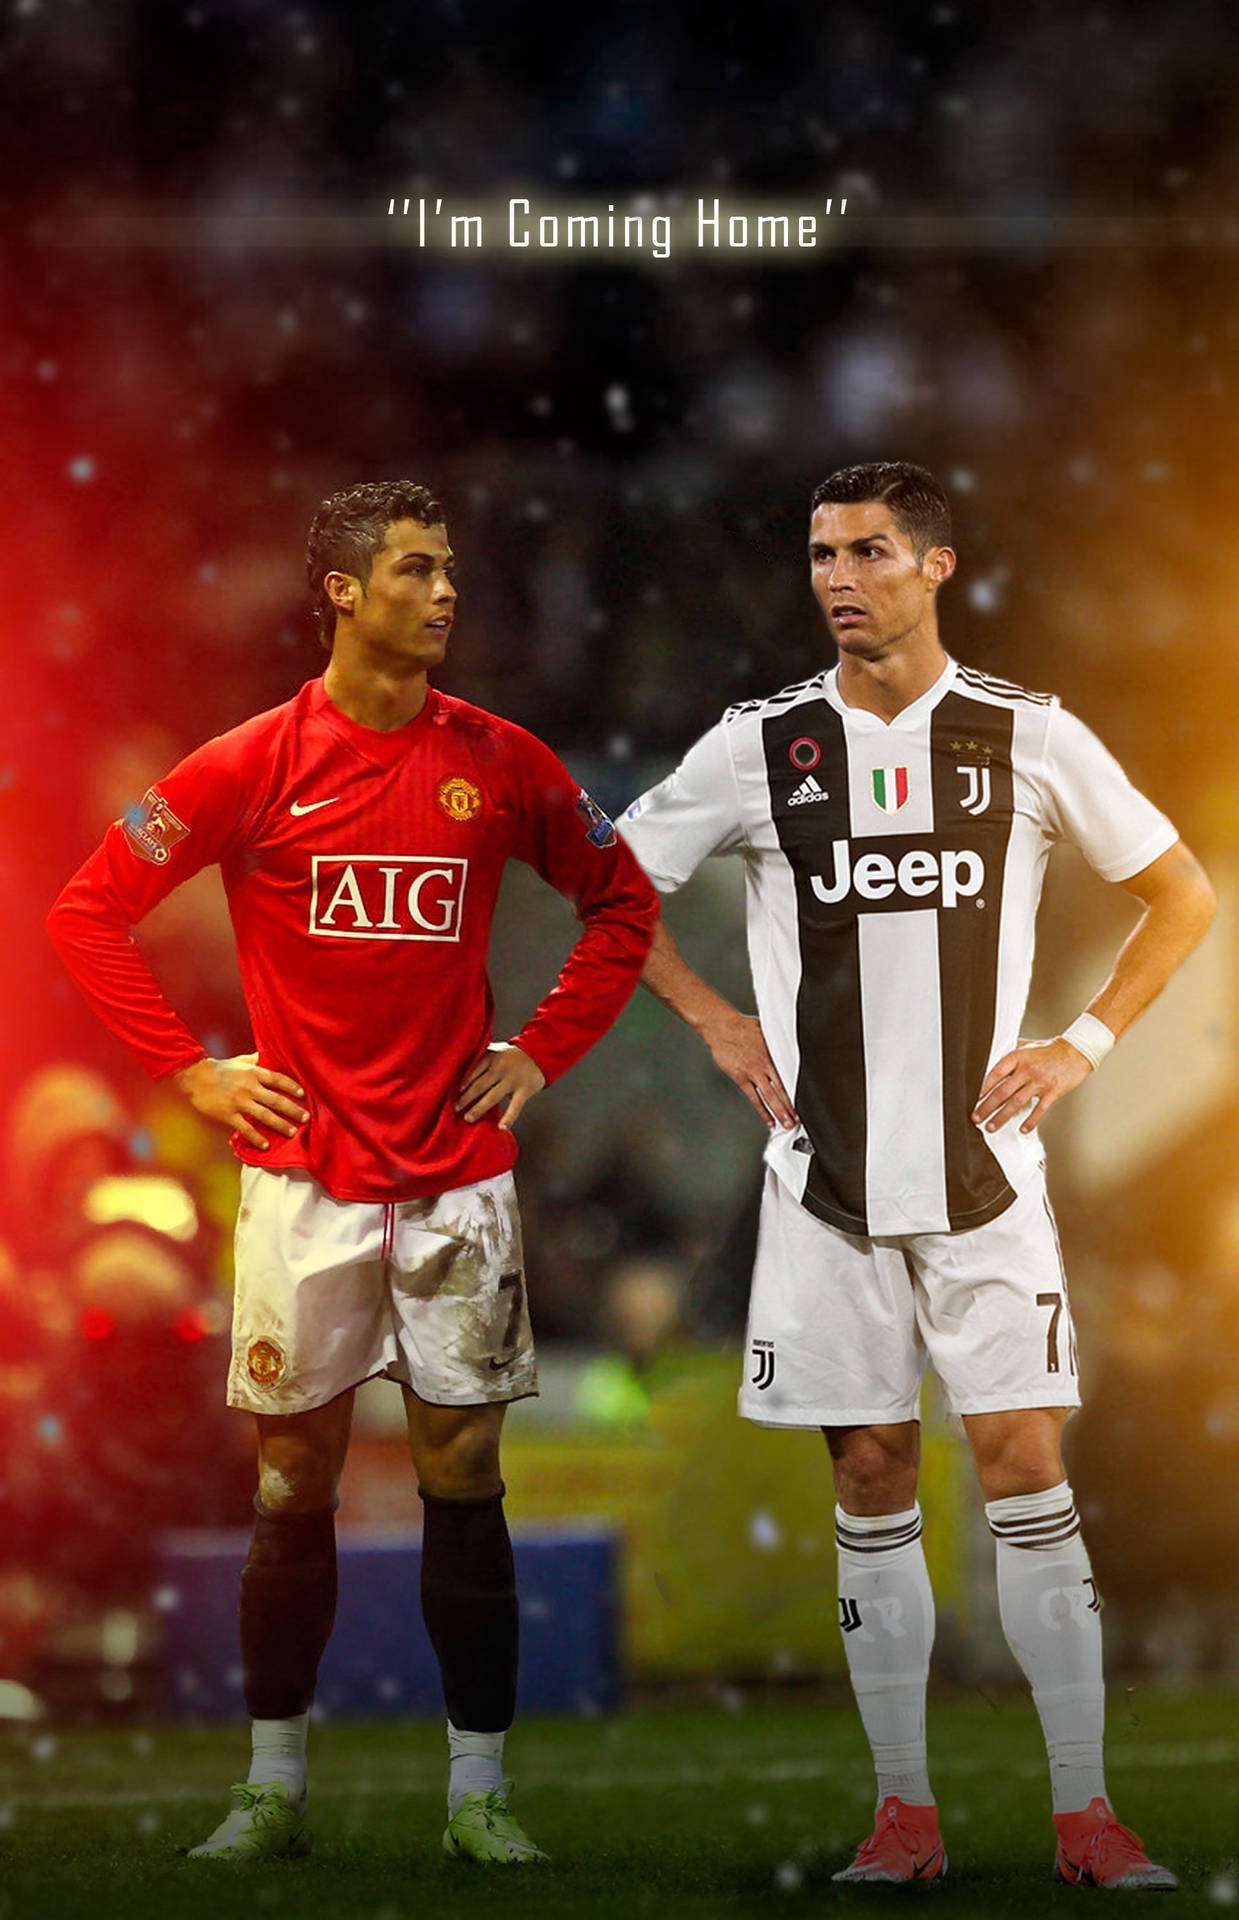 Cristiano Ronaldo Manchester United Jersey Uniforms